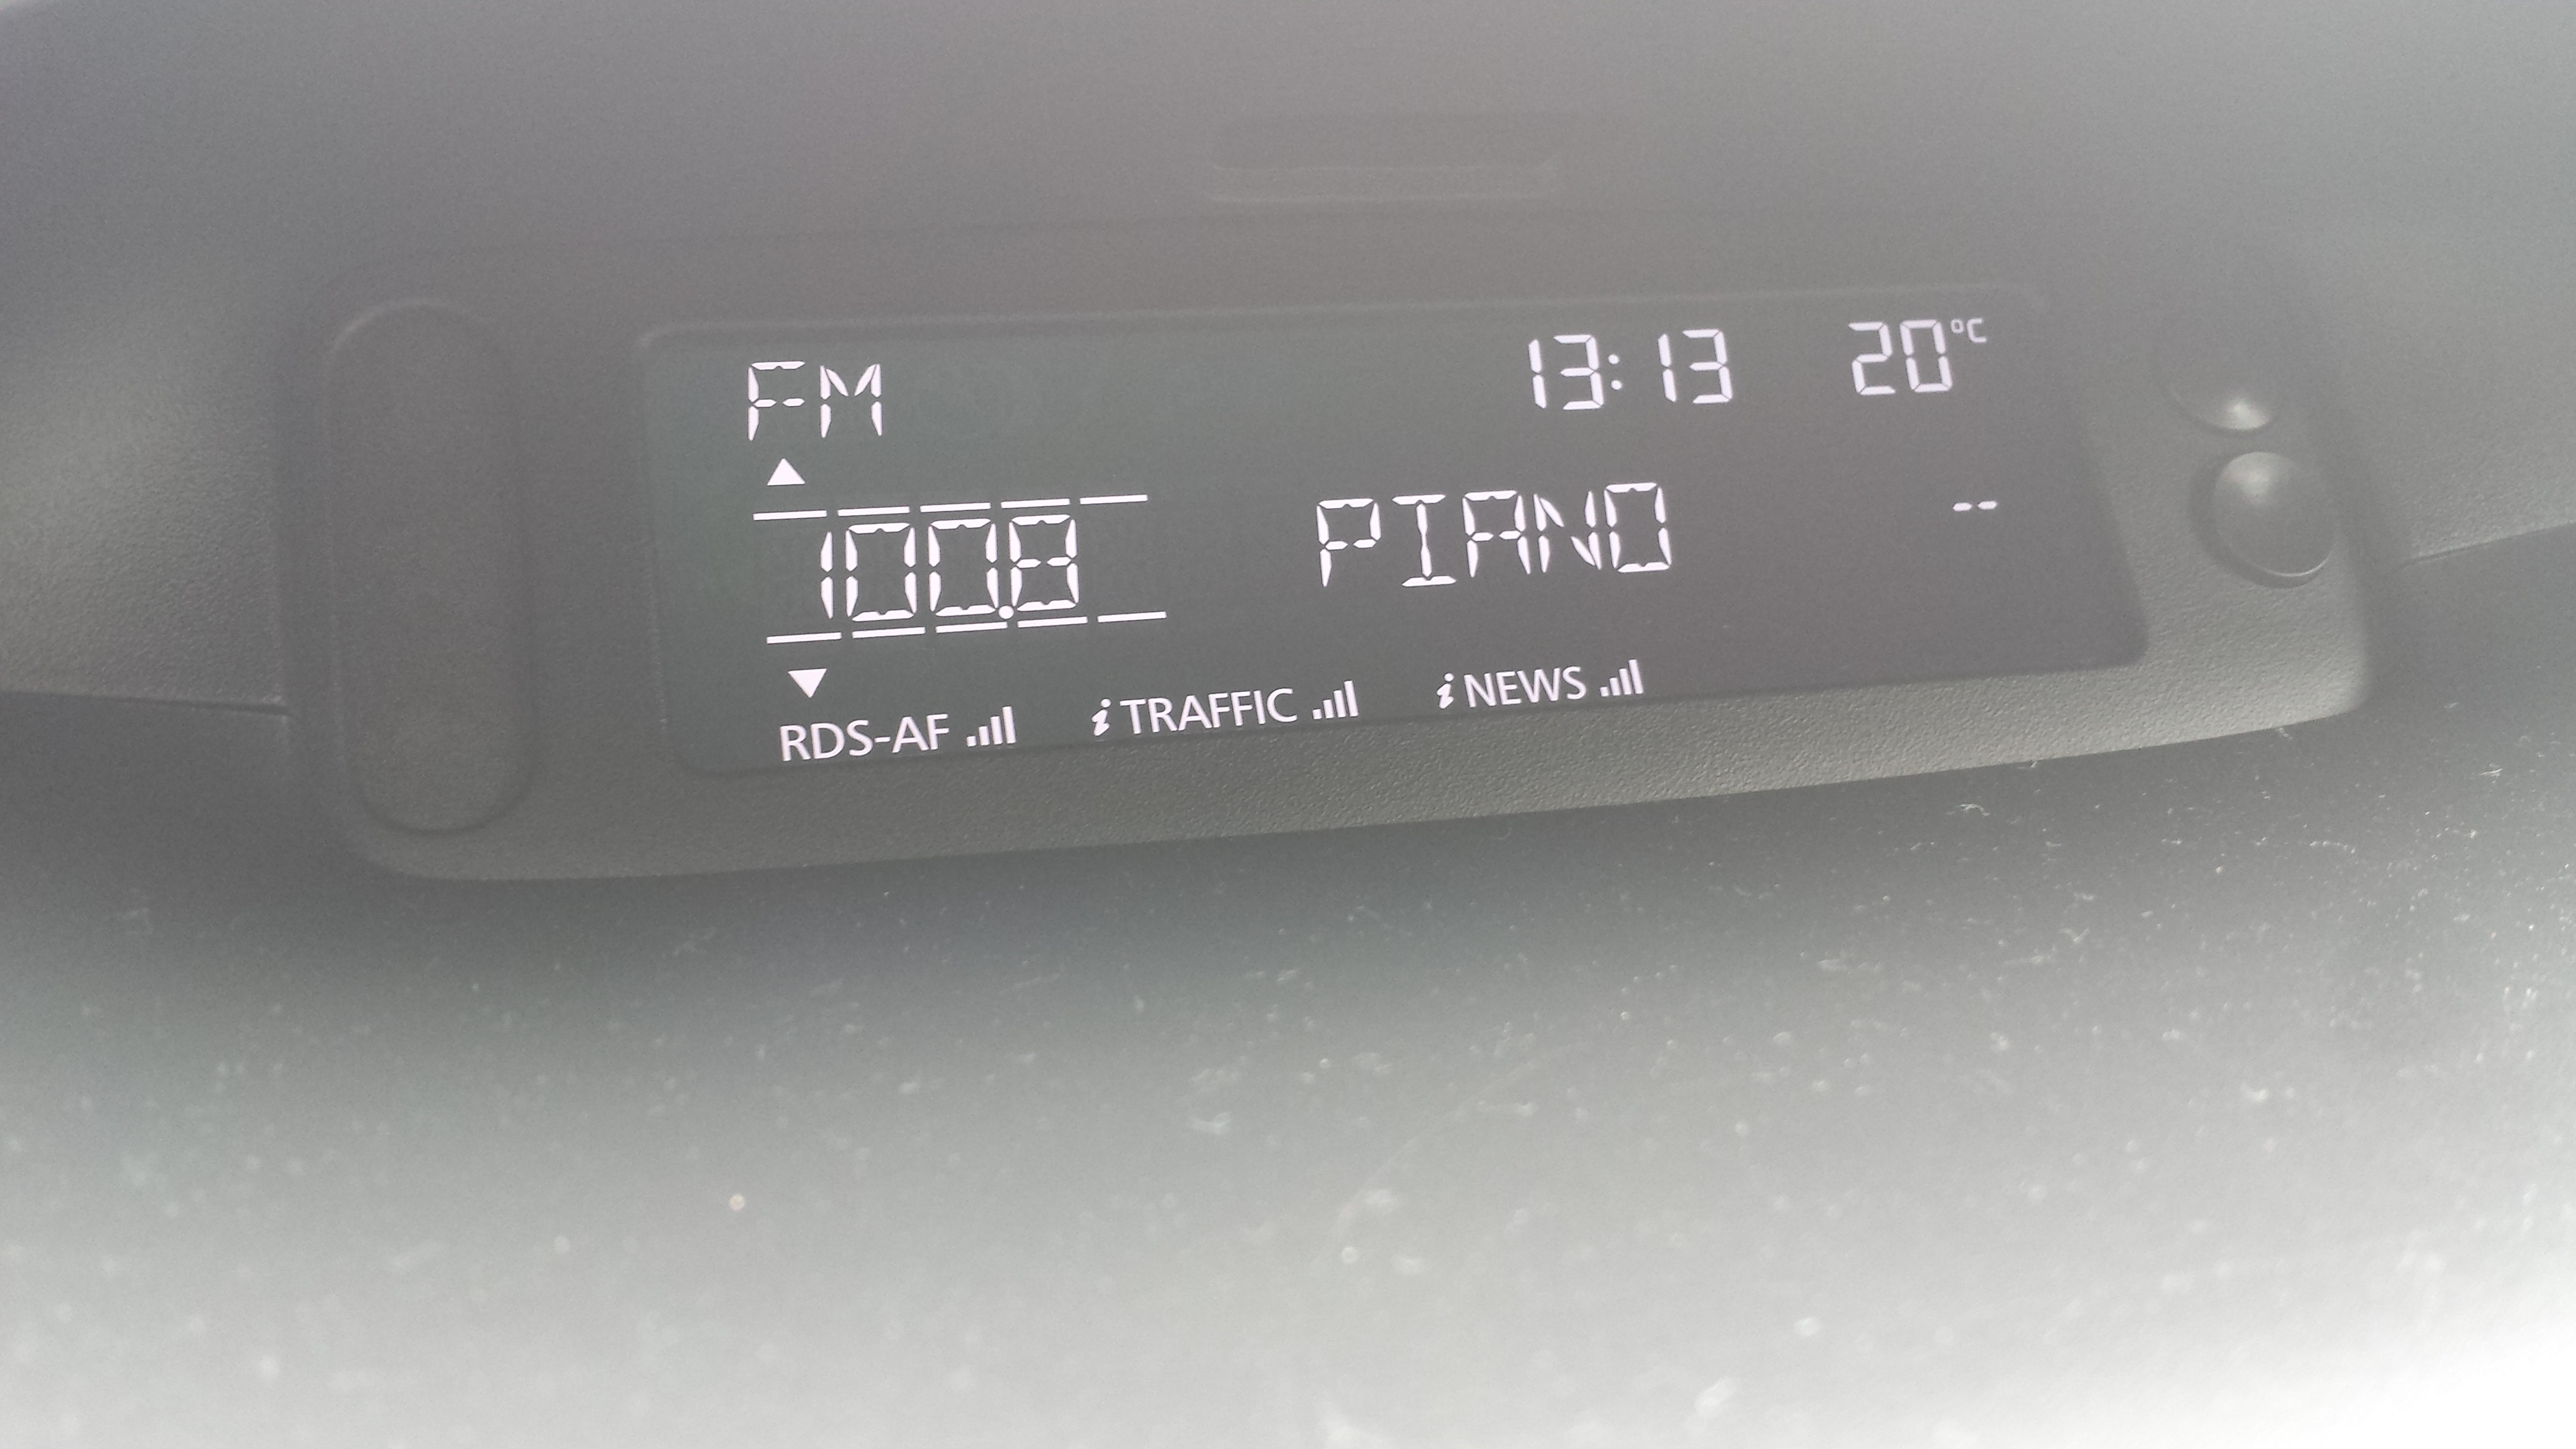 Wymiana radia na niefirmowe Car Audio (nagłośnienie